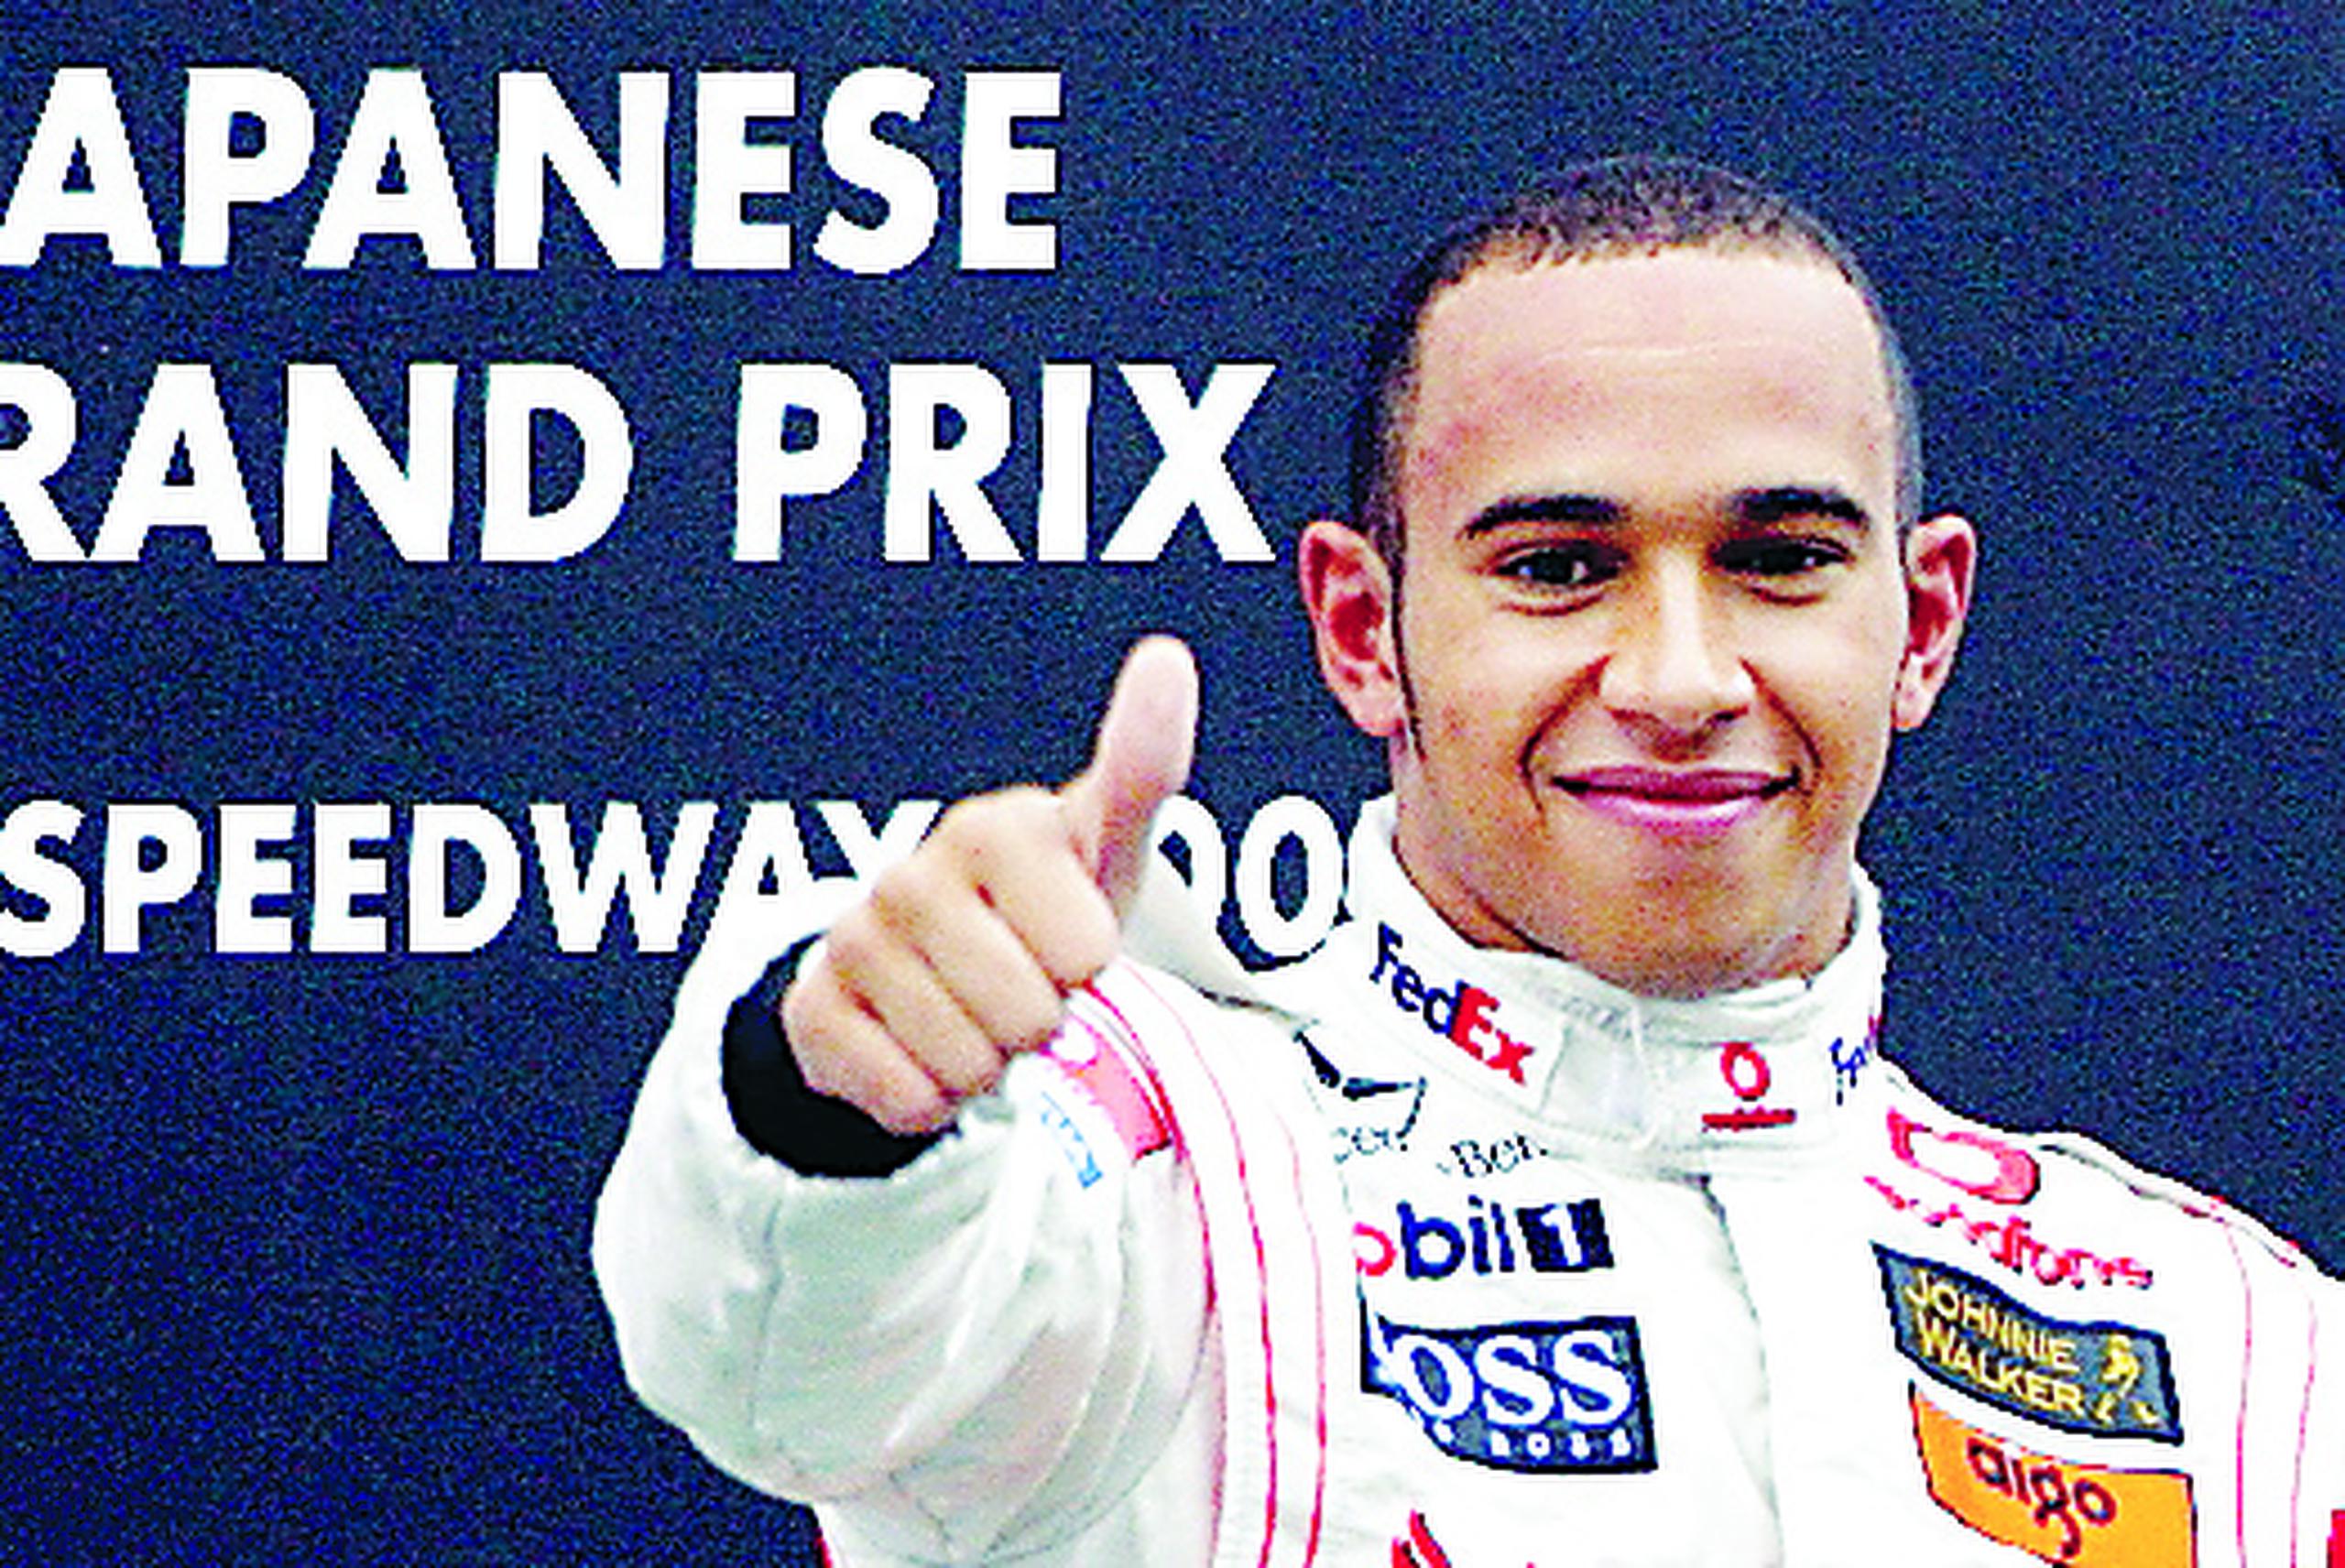 El piloto británico Lewis Hamilton, seis veces campeón mundial, destacó la decisión como una gran oportunidad para educarnos y "como individuos, marcas o empresas" promover cambios que lleven a la igualdad y la inclusión.